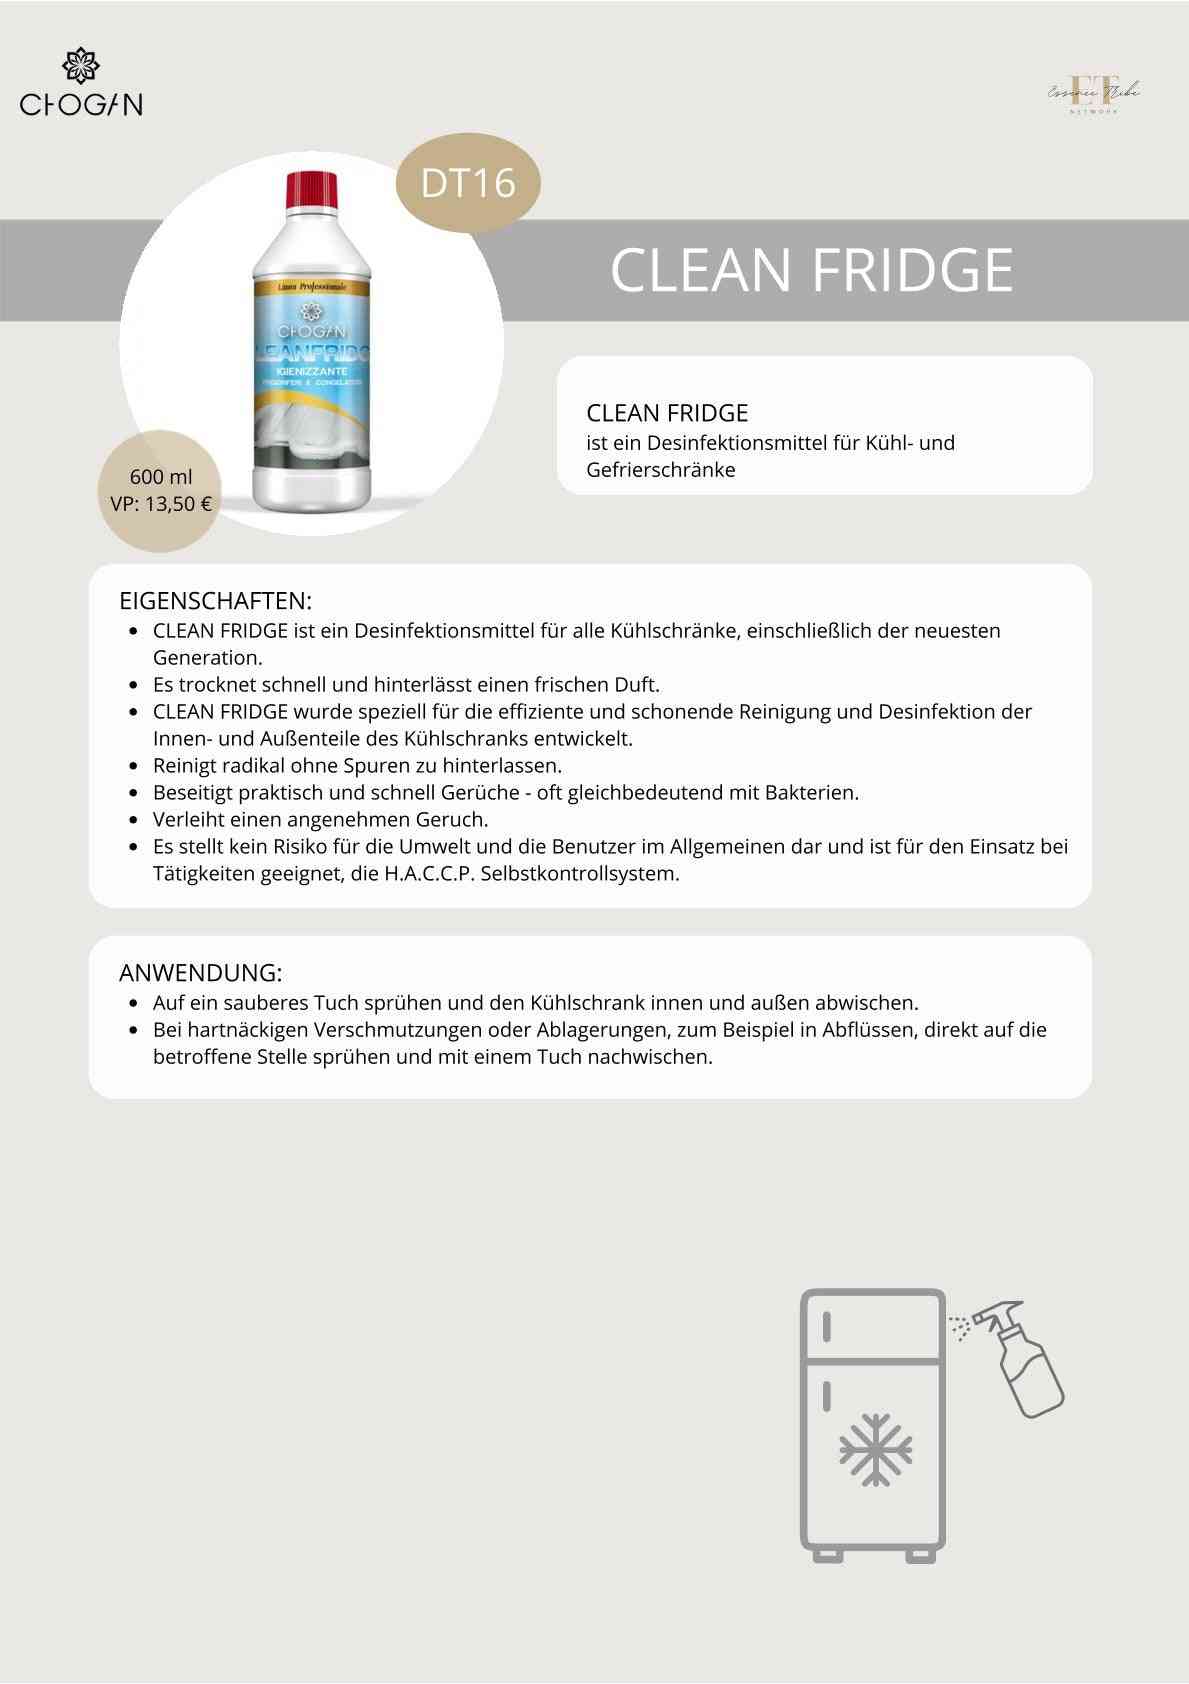 Cleanfridge – spray nettoyant hygiénique pour réfrigérateurs